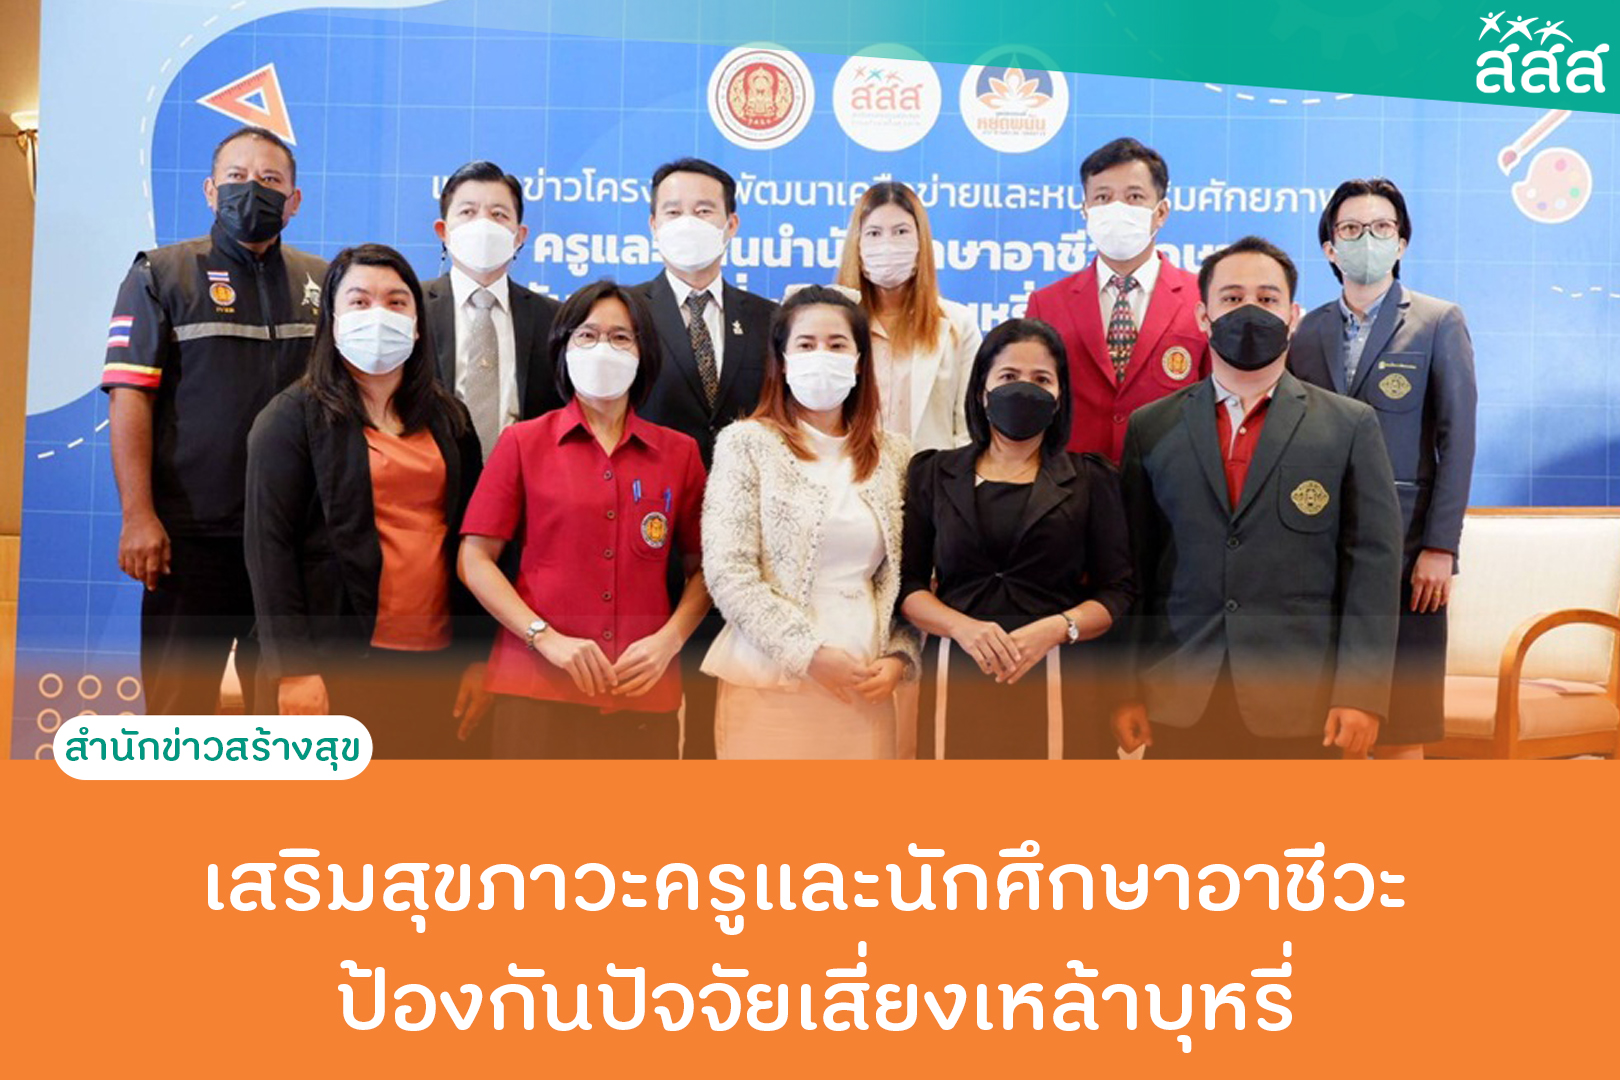 เสริมสุขภาวะครูและนักศึกษาอาชีวะ ป้องกันปัจจัยเสี่ยงเหล้าบุหรี่ thaihealth